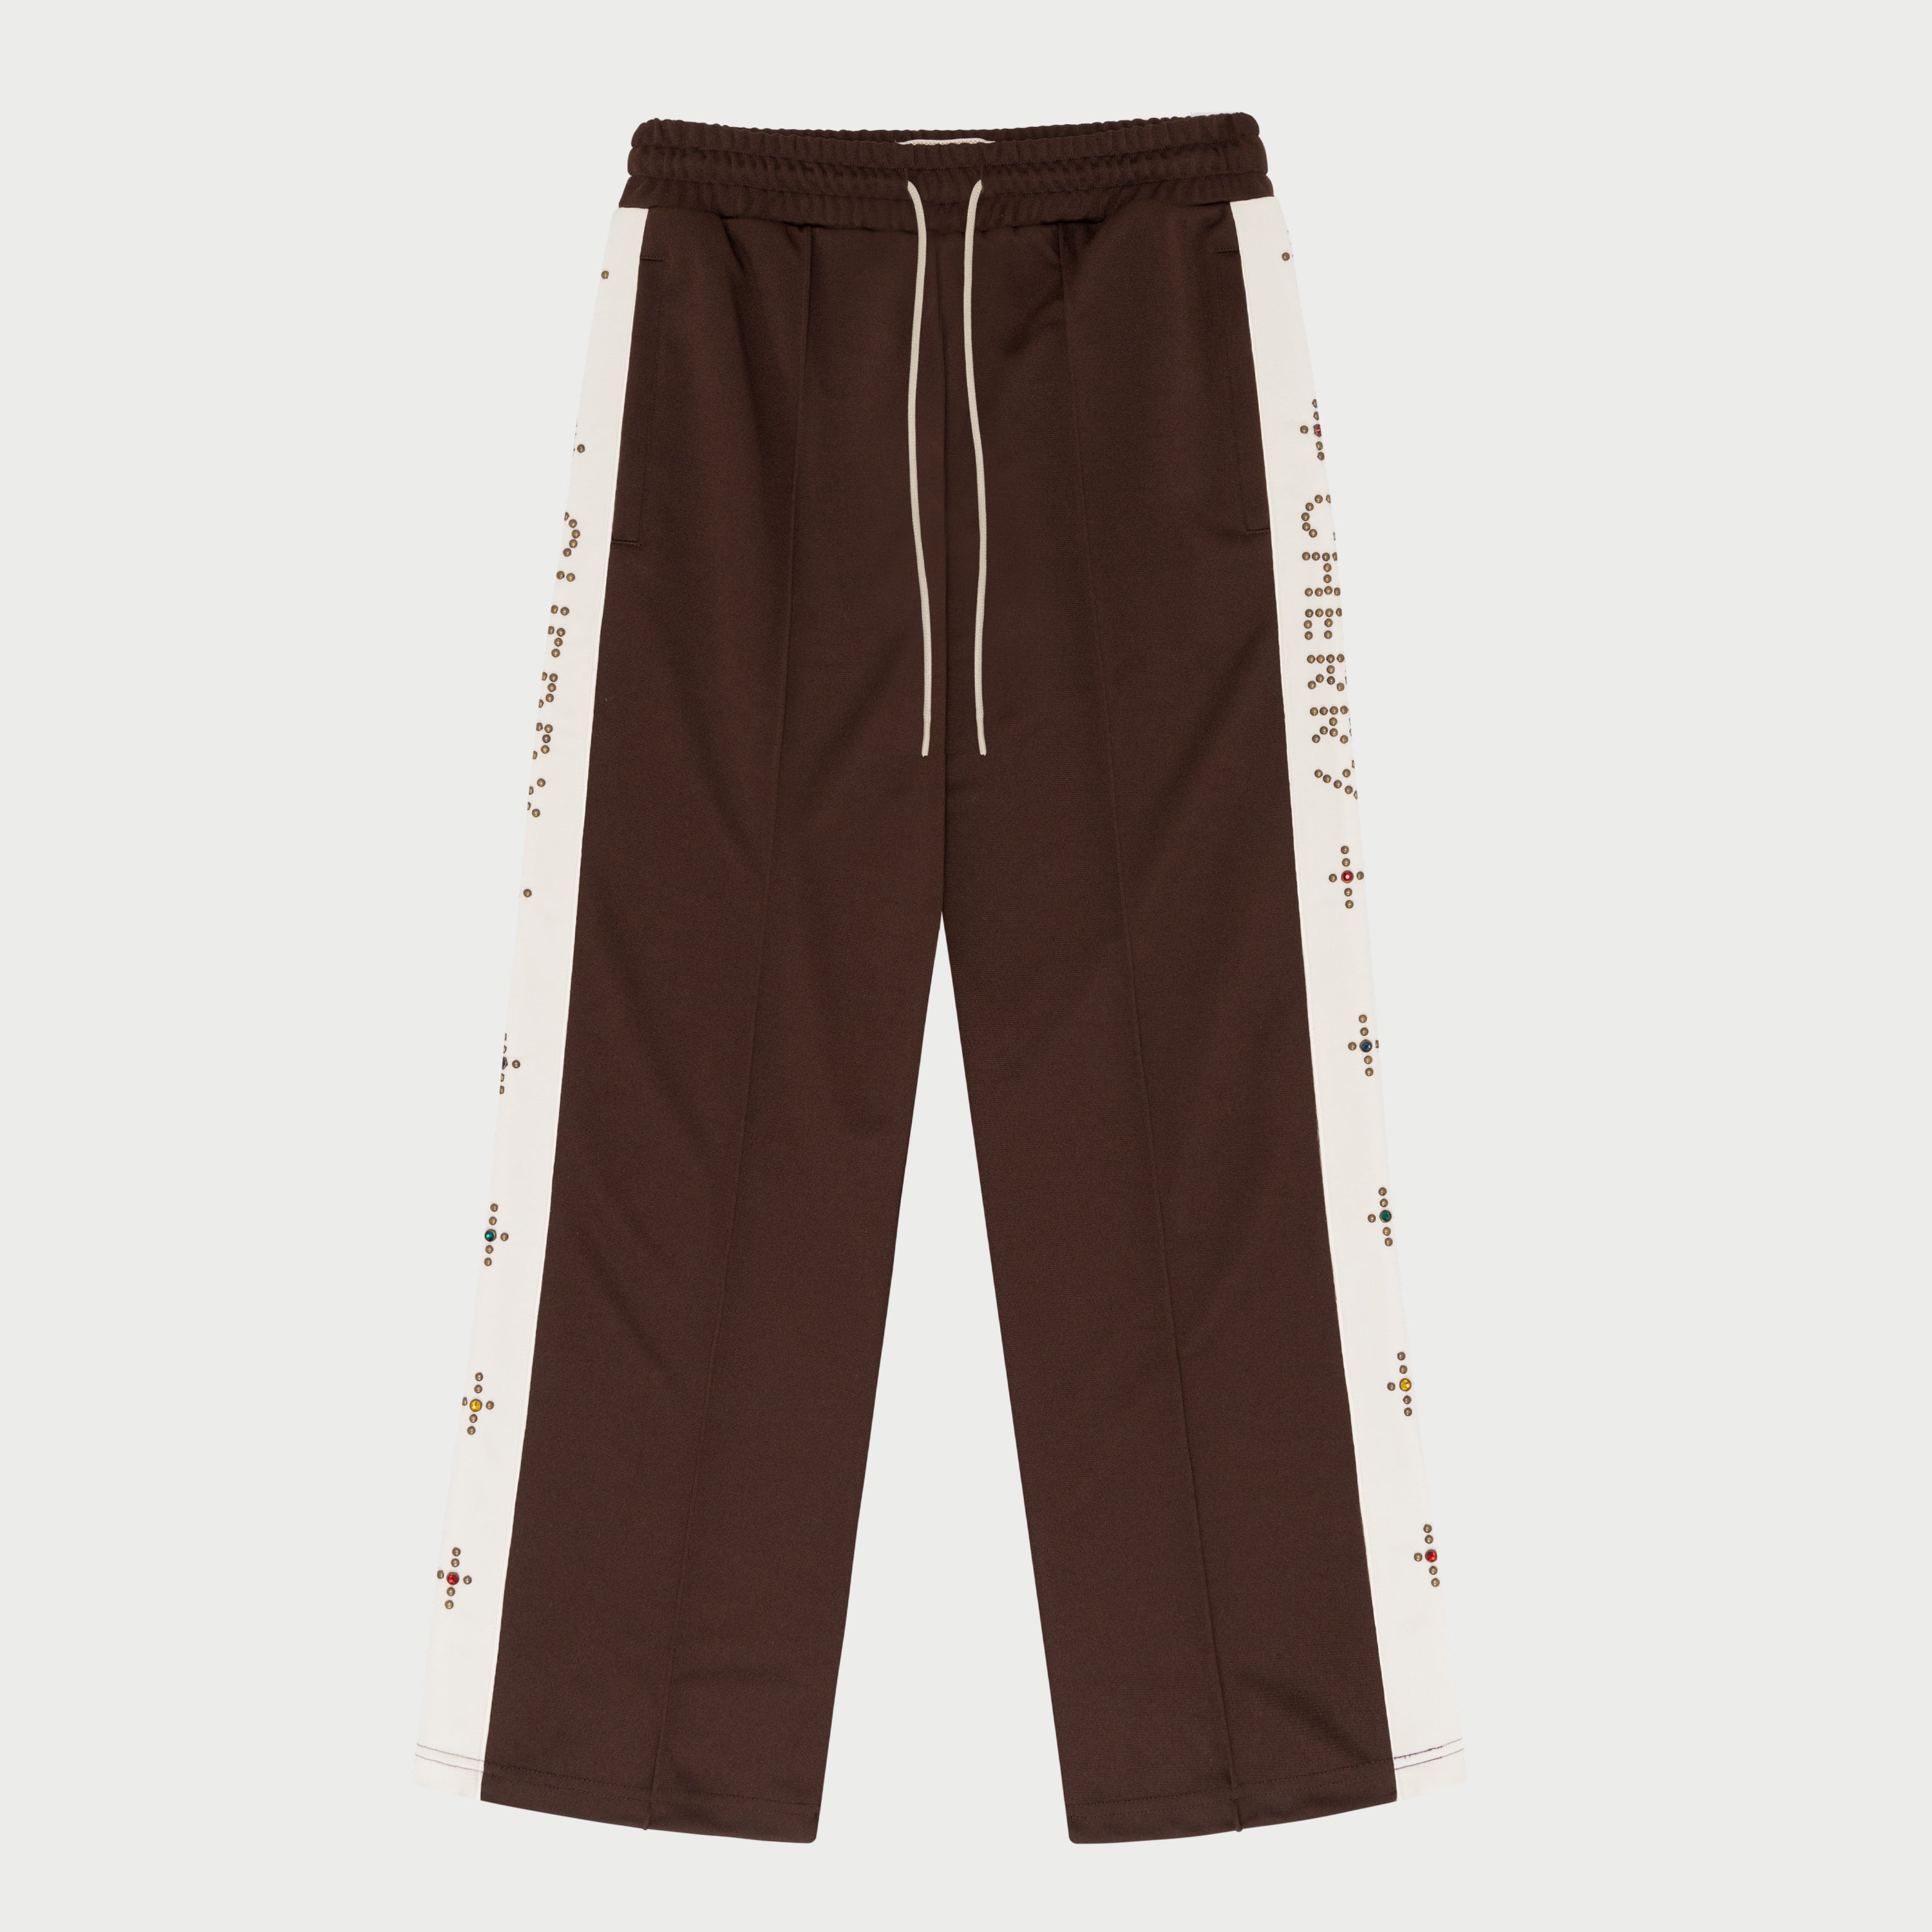 Studded Track Pants (Brown)